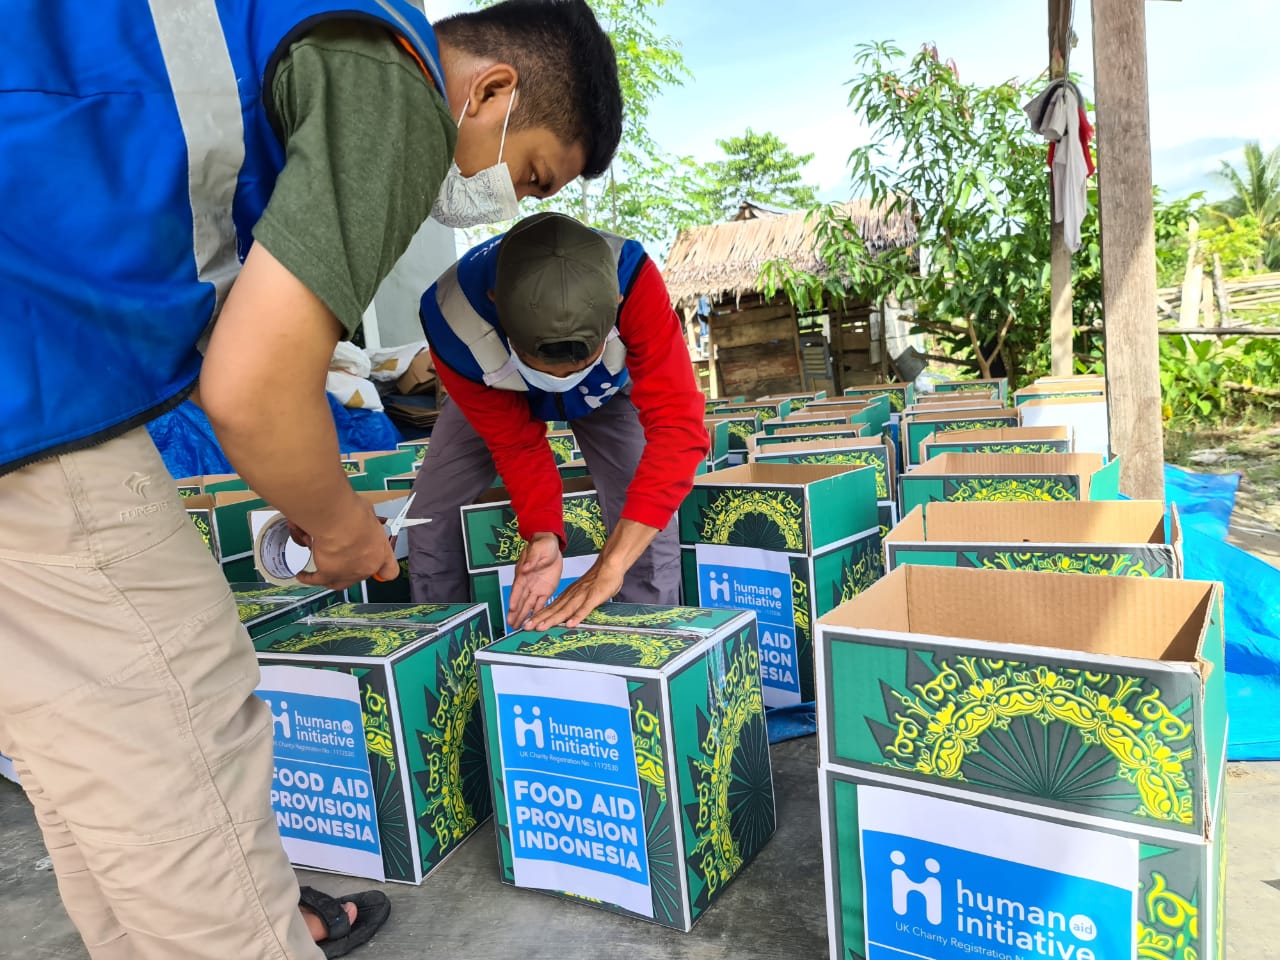 Volunteers packing boxes of food aid